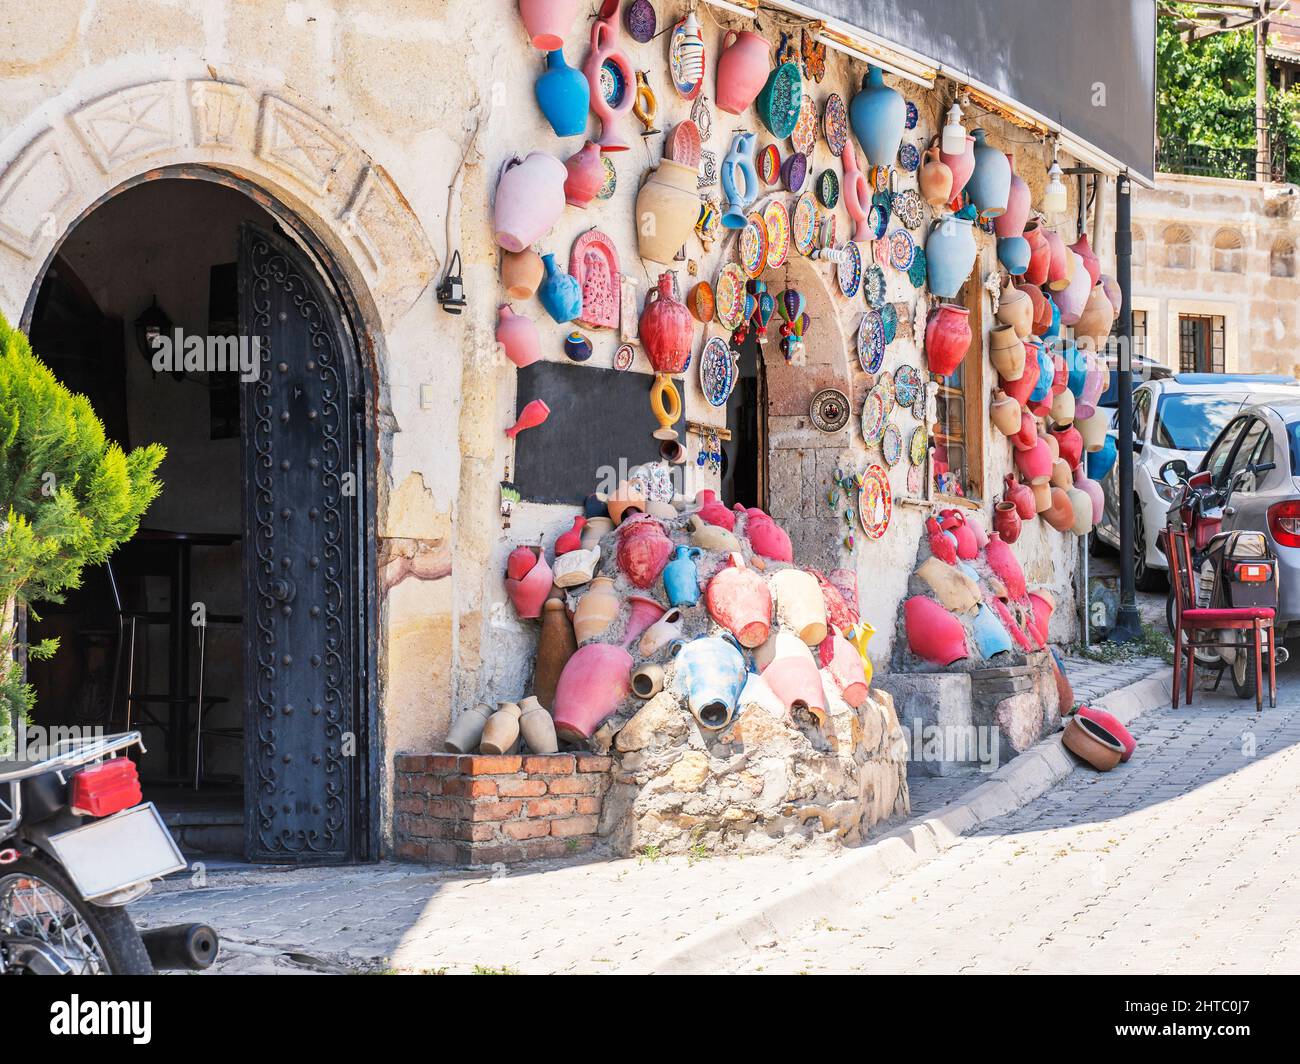 Vasi di argilla e souvenir al mercato Avanis. Turchia. Foto Stock